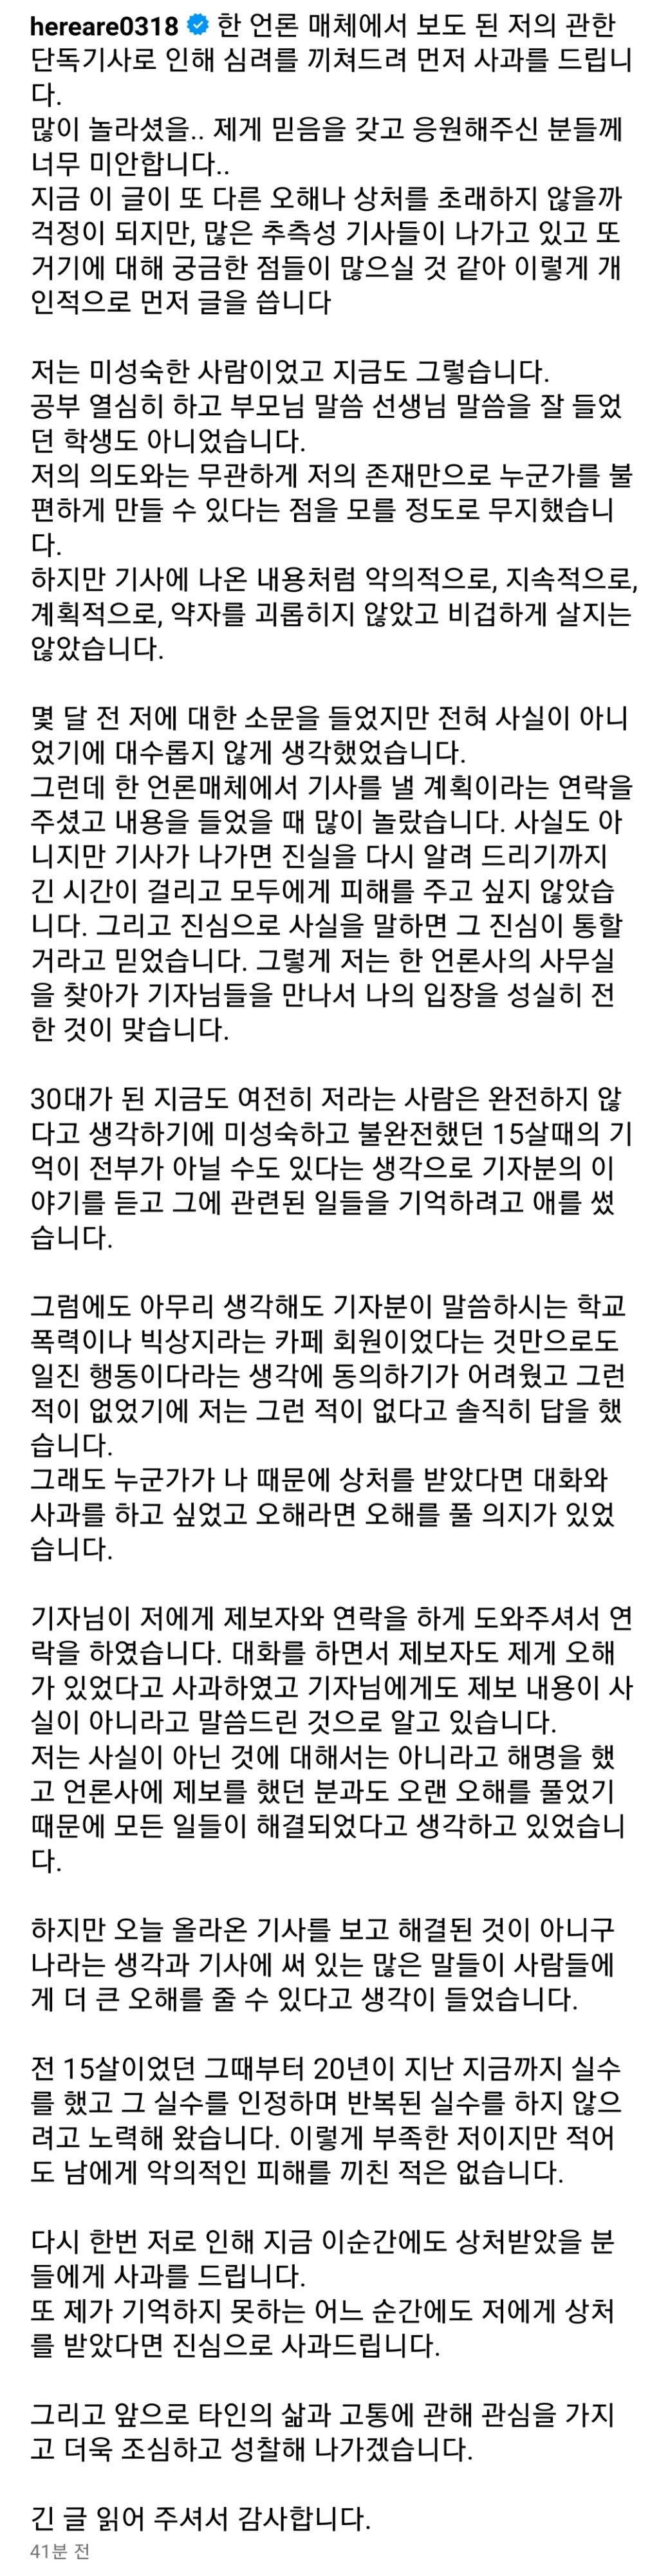 김히어라 학폭 논란 + 입장문